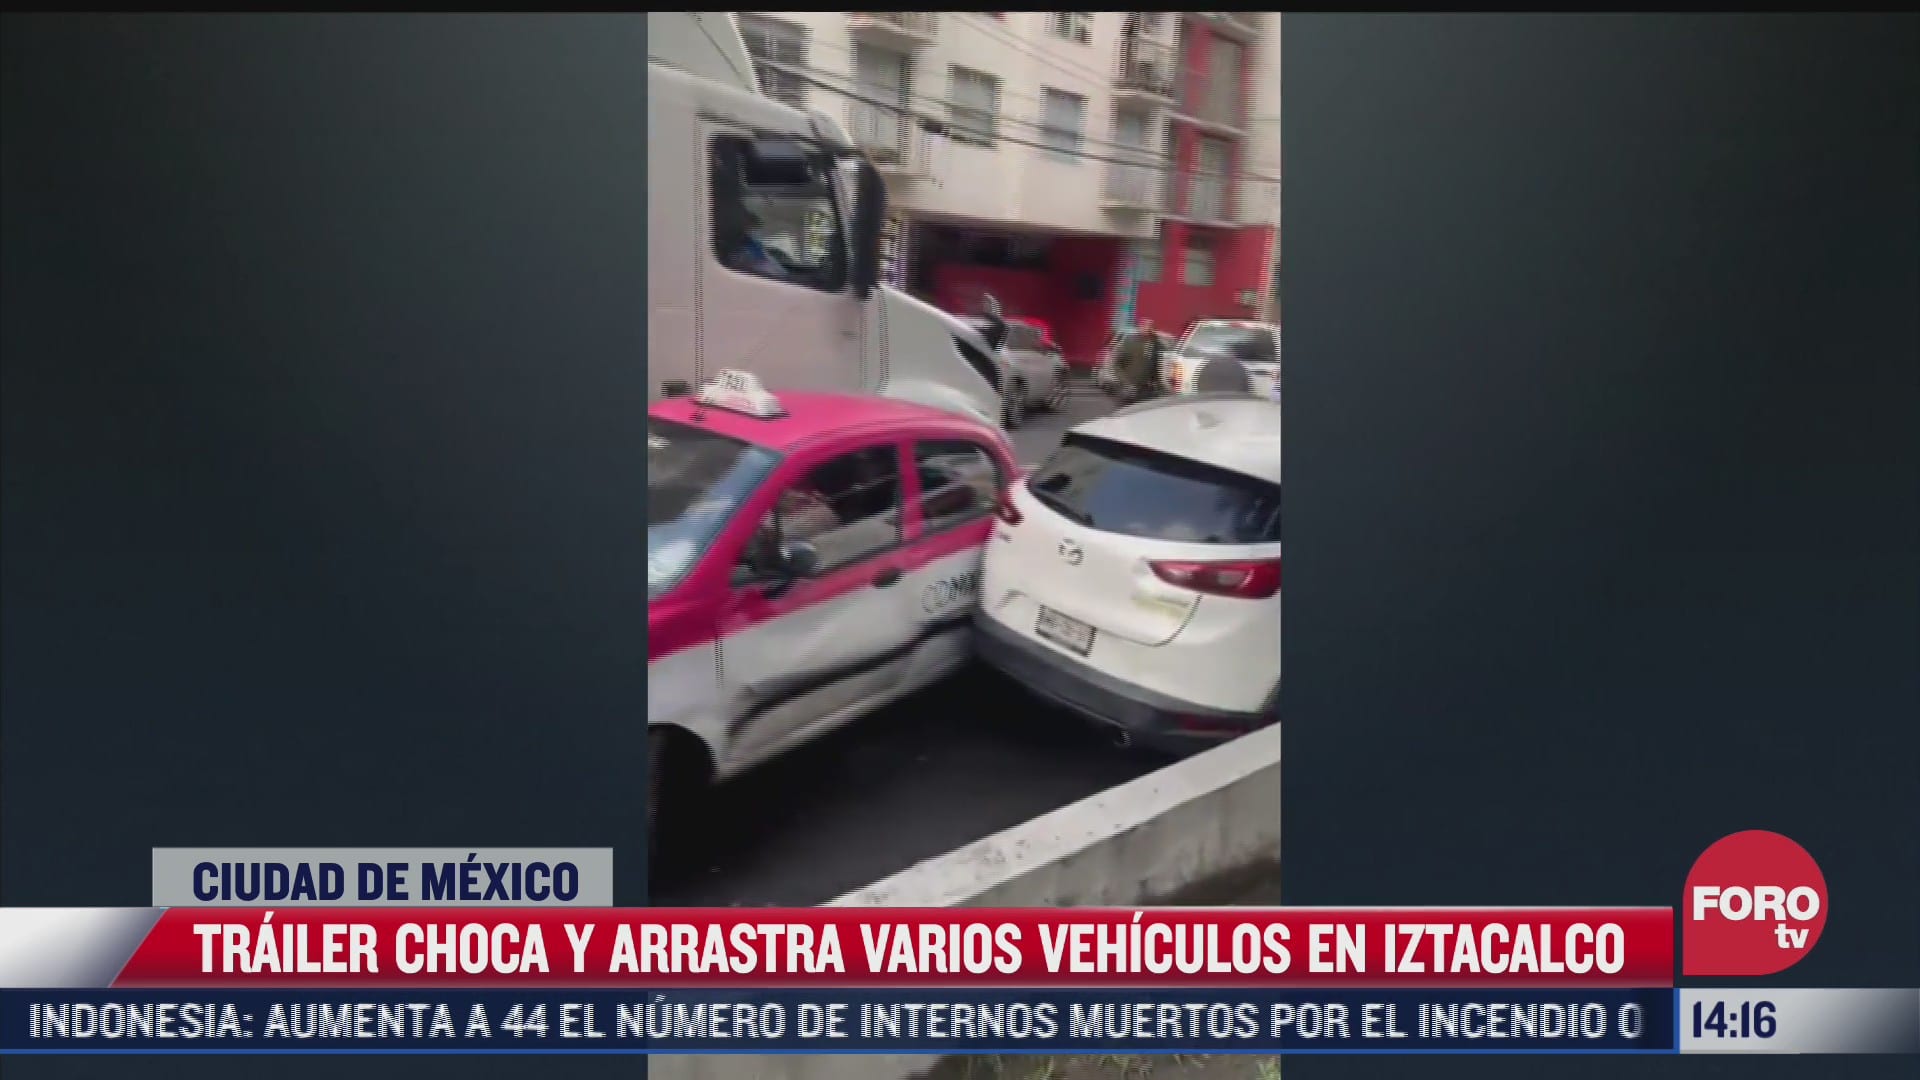 trailer en aparente estado de ebriedad choca varios vehiculos en iztacalco